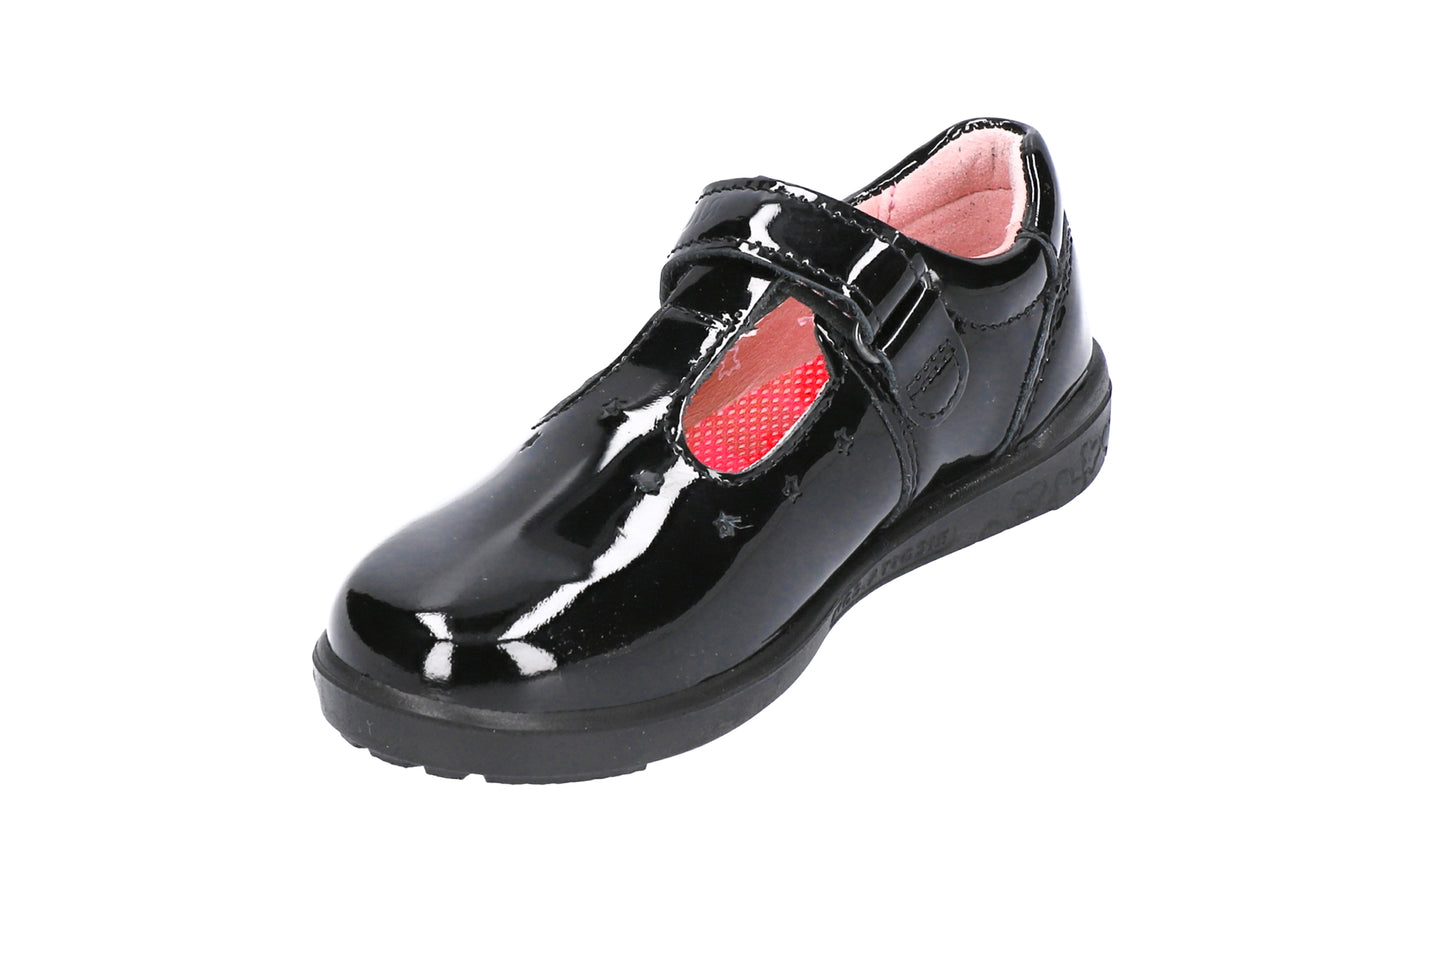 Scarlett Patent Leather T-bar Girls School Shoe